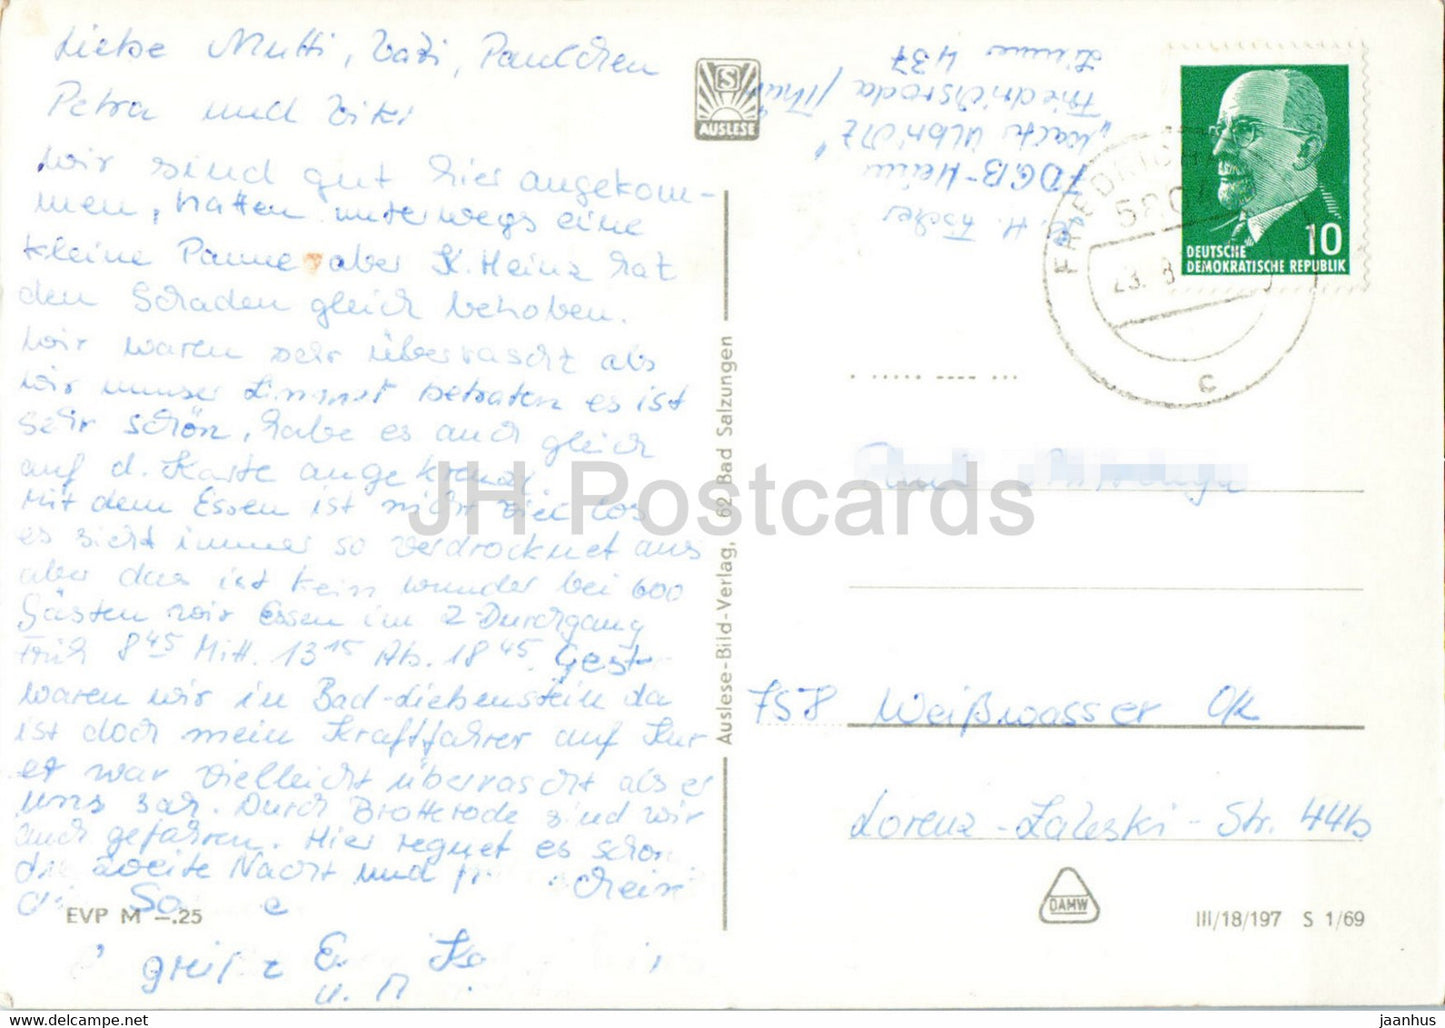 Friedrichroda - Thur - FDGB Heim Hermann Danz - Walter Ulbricht - Marienquelle - carte postale ancienne - Allemagne DDR - utilisé